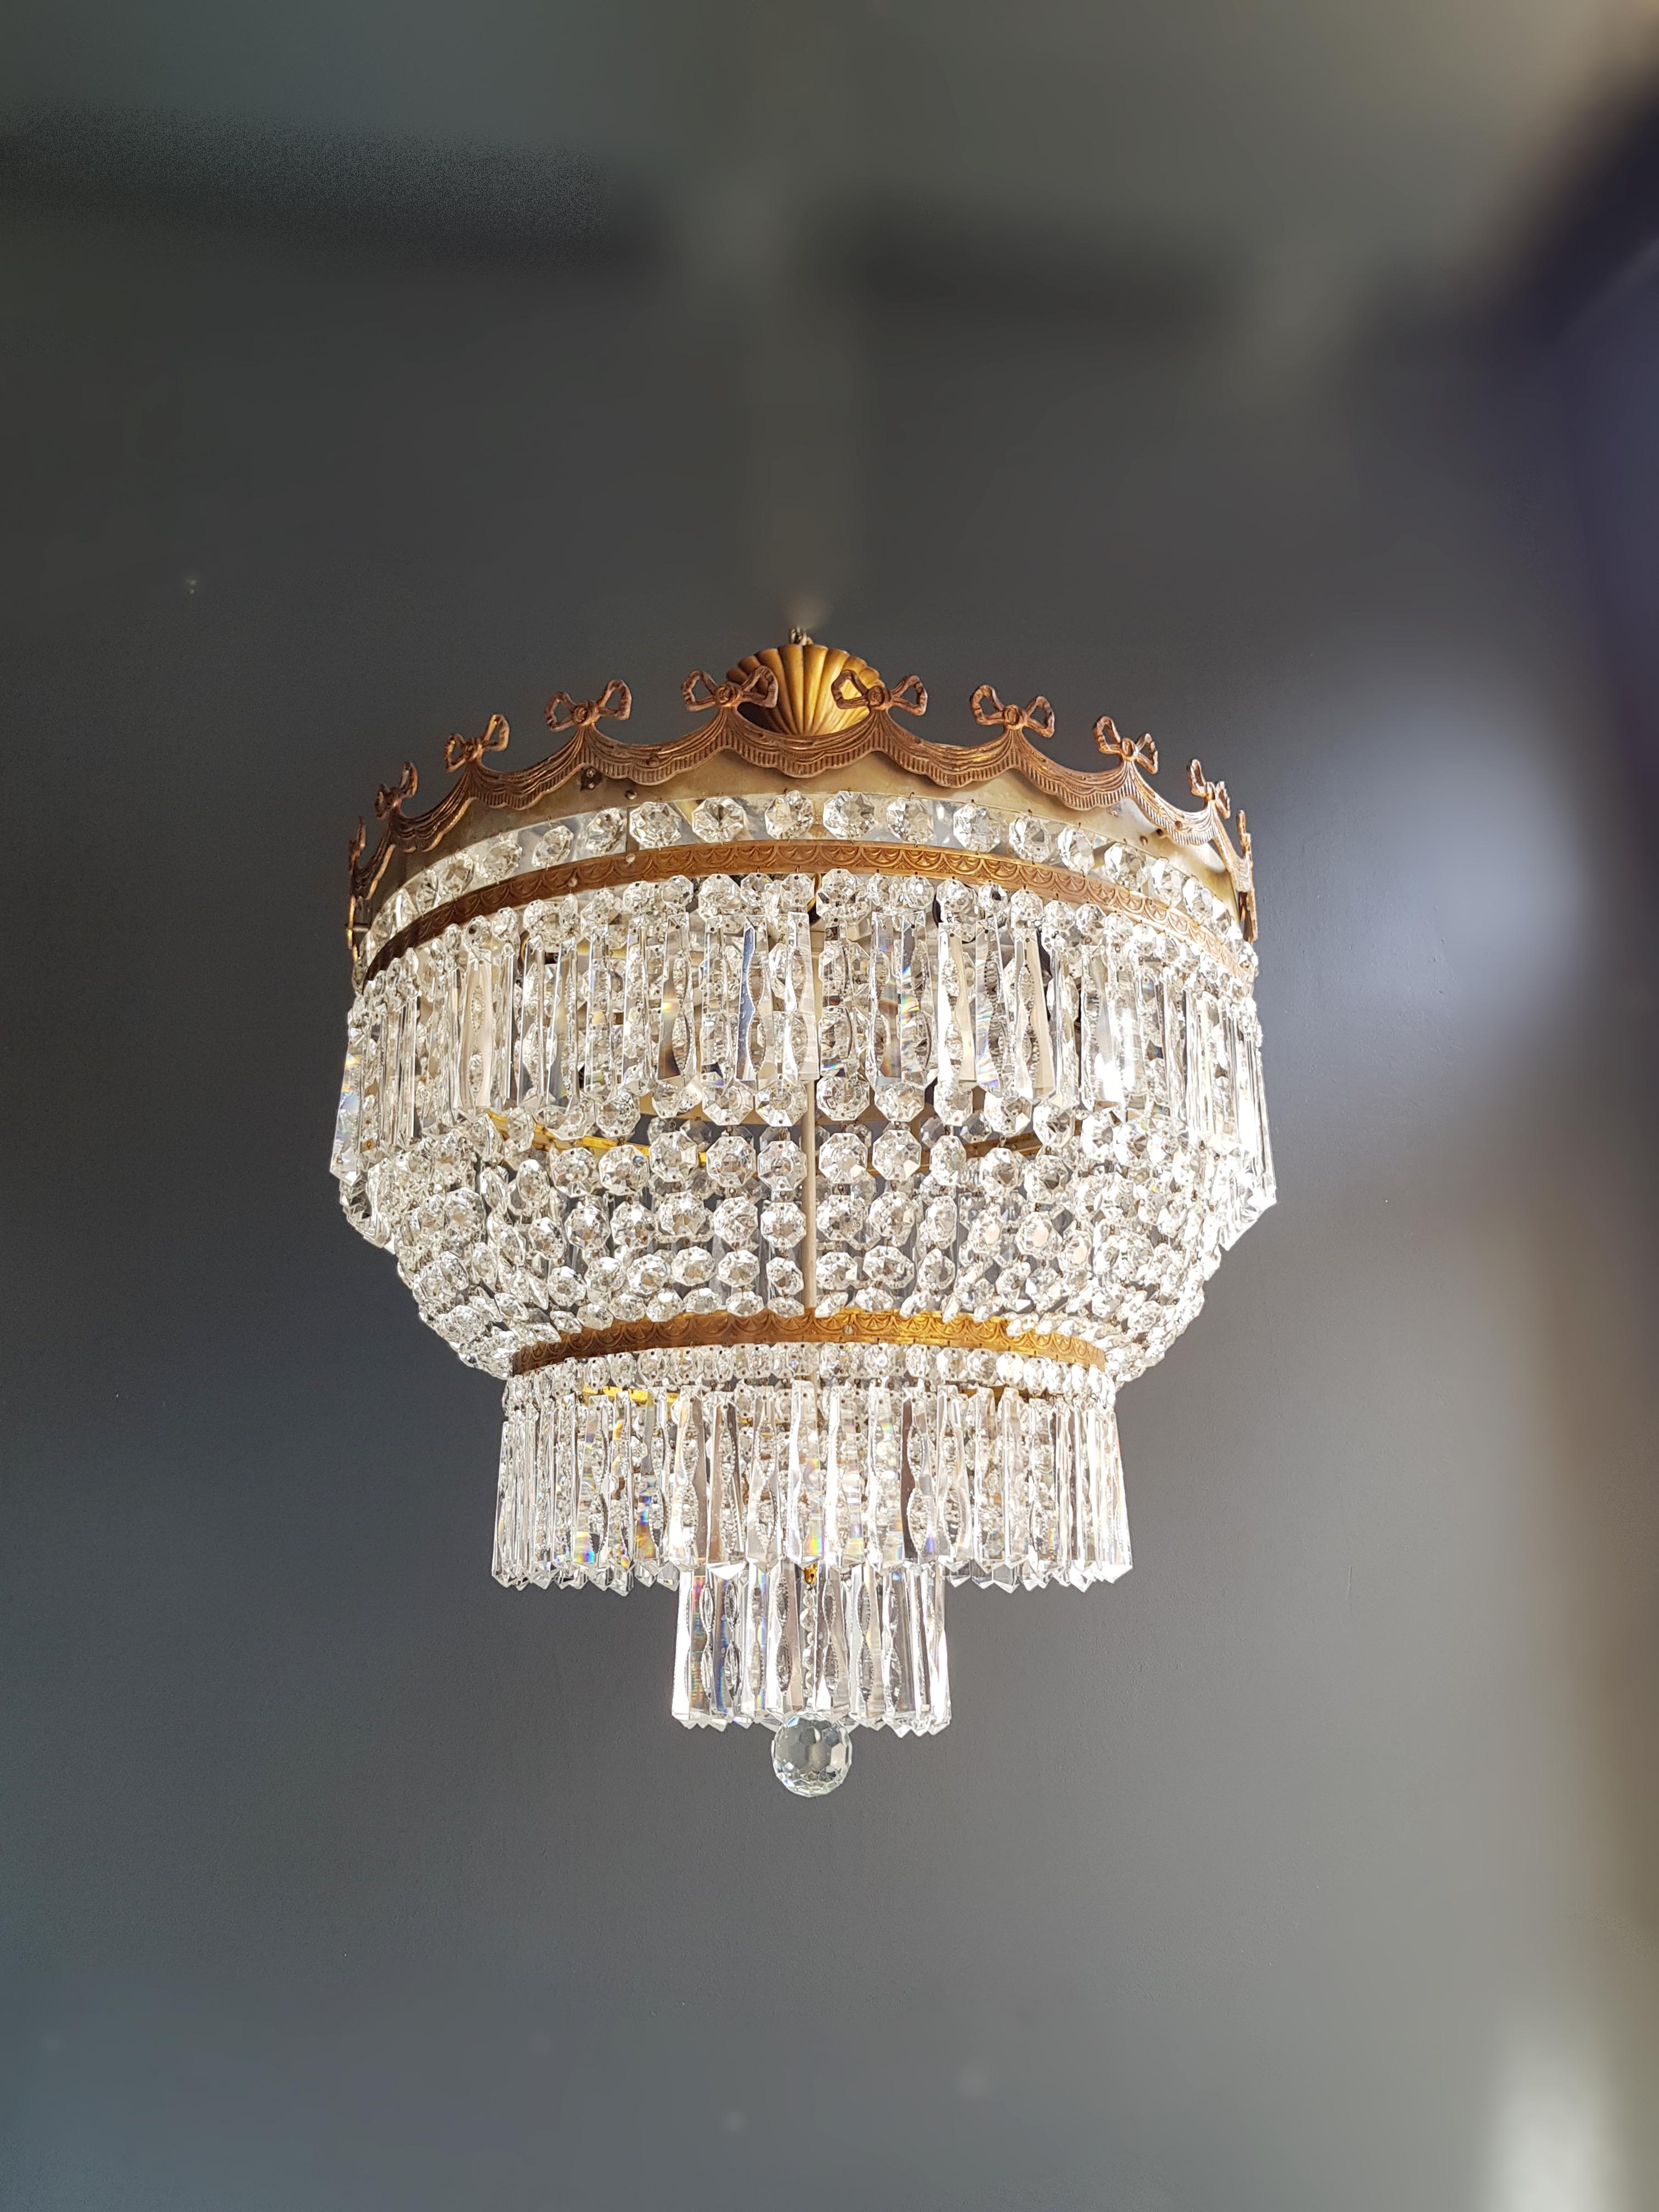 Low Plafonnier Crystal Chandelier Brass Lustre Ceiling Antique Art Nouveau 1